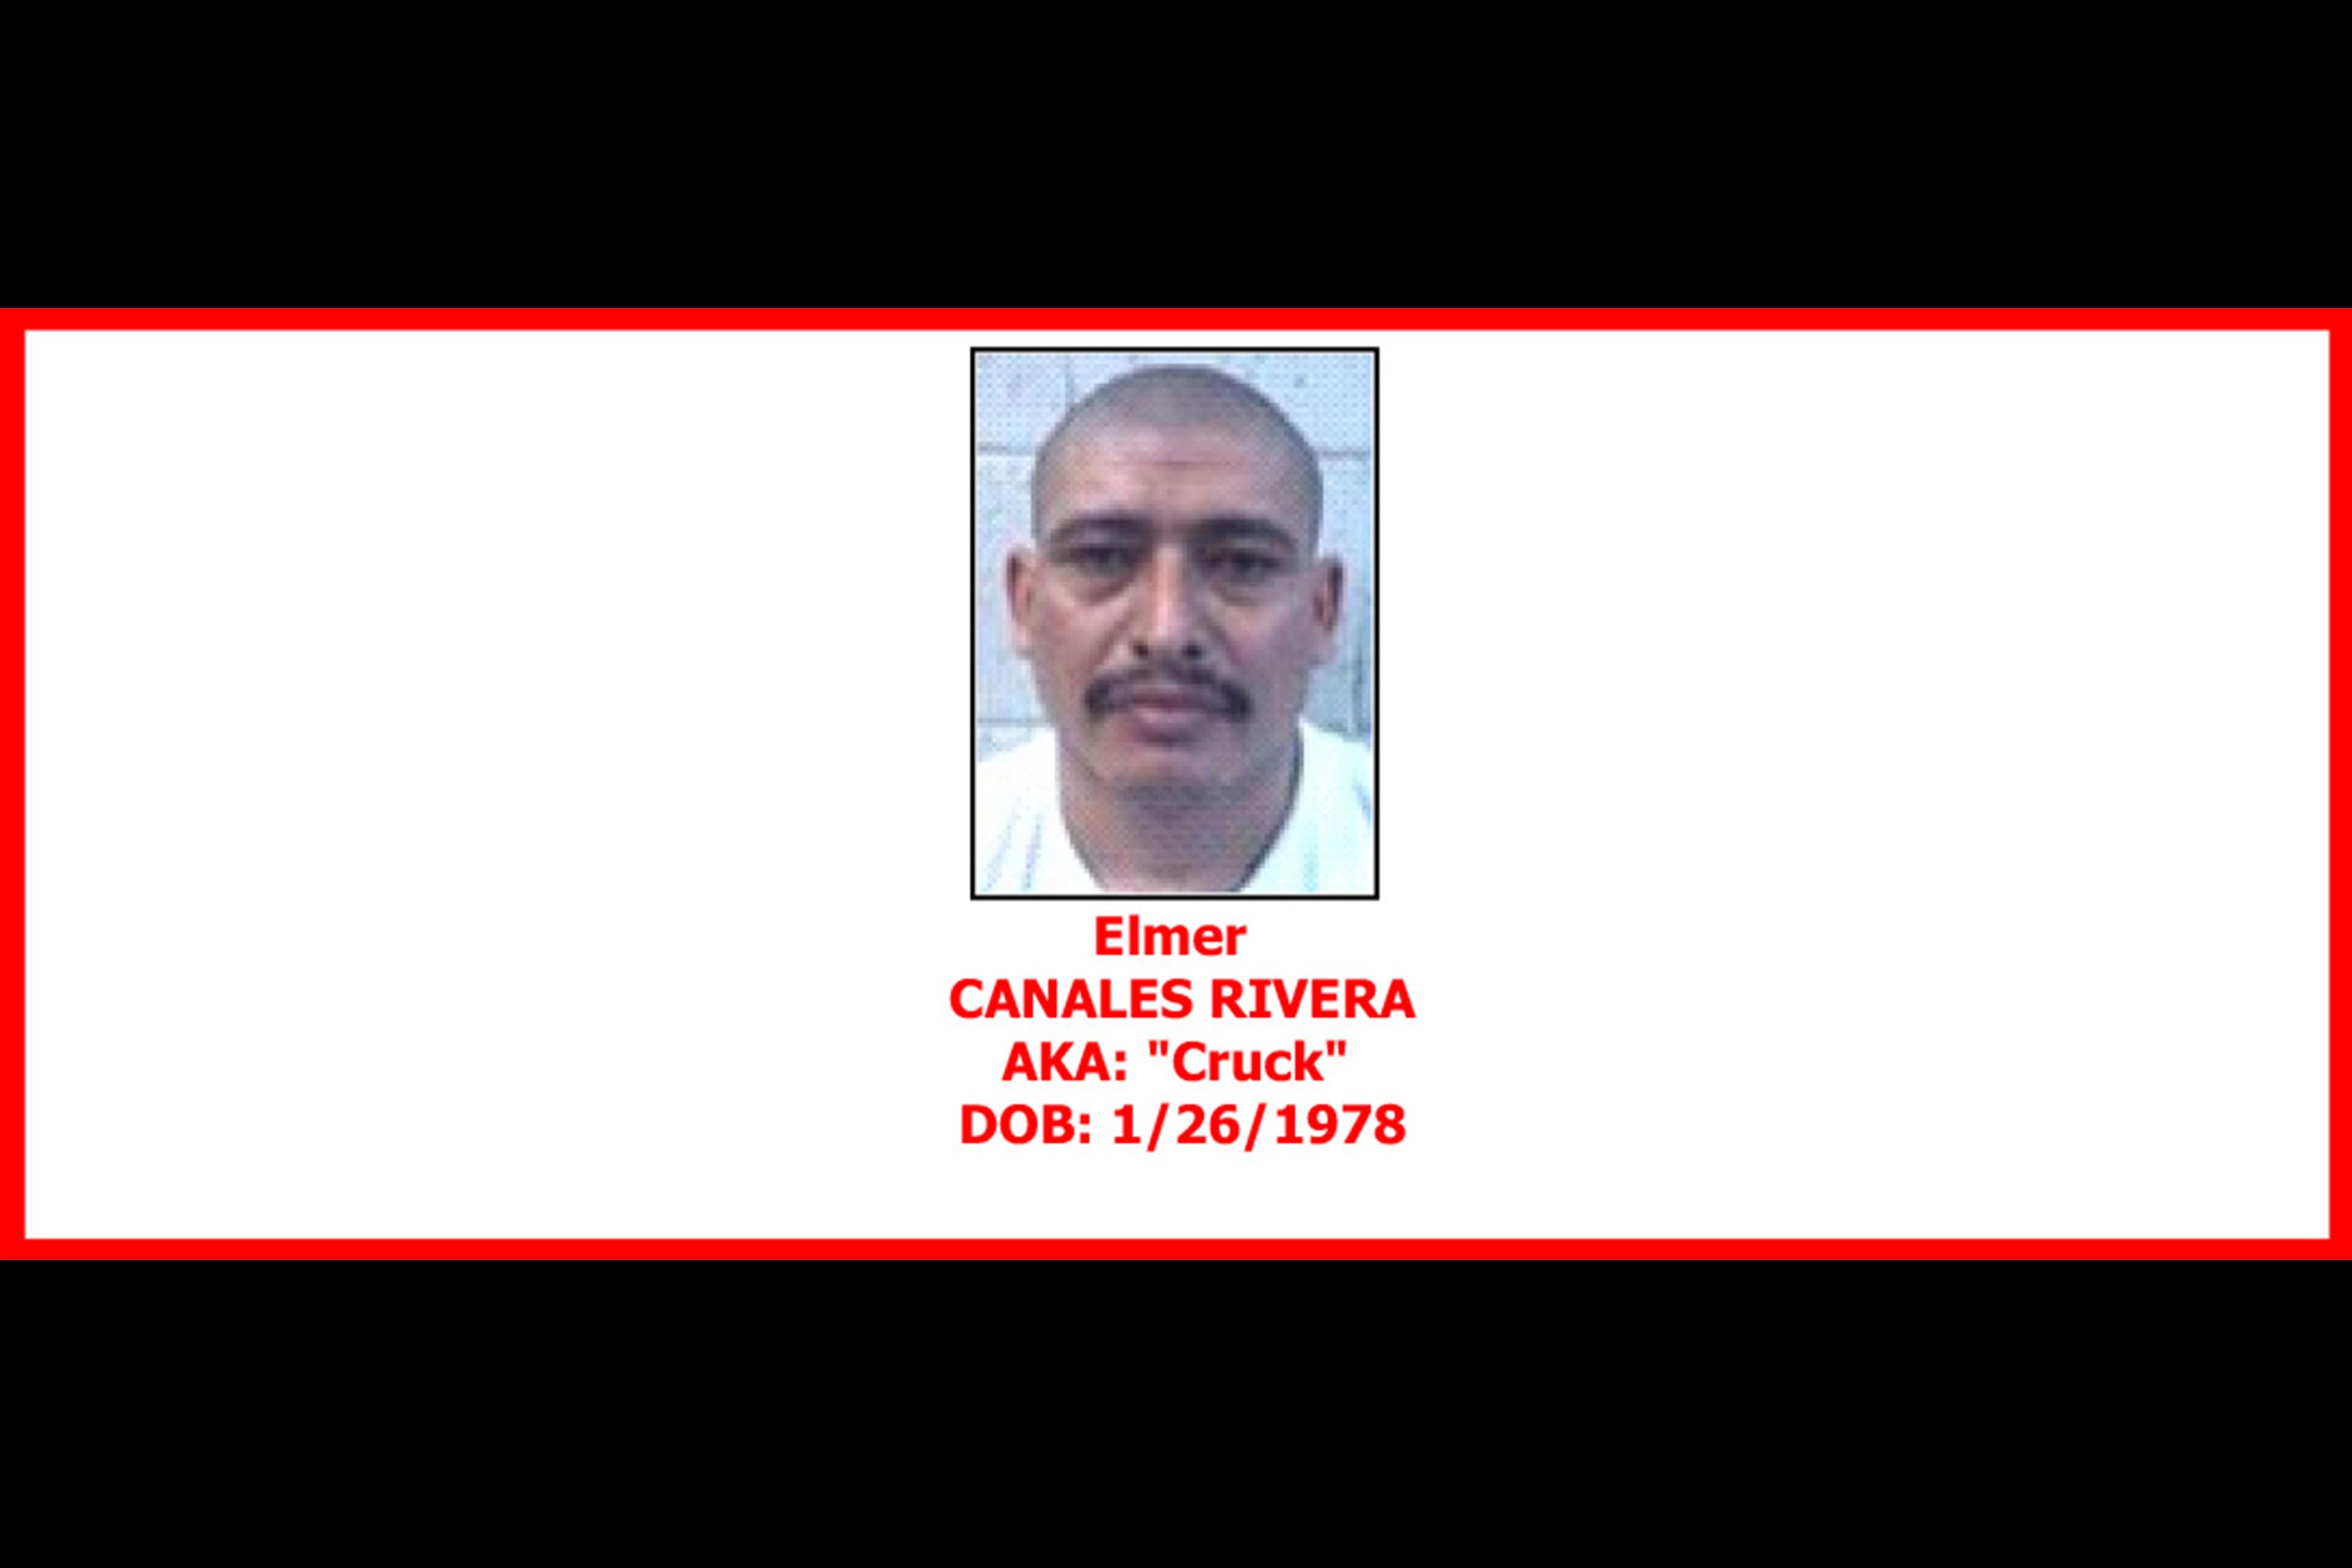 In April 2015 the U.S. Treasury designated Élmer Canales Rivera, alias 